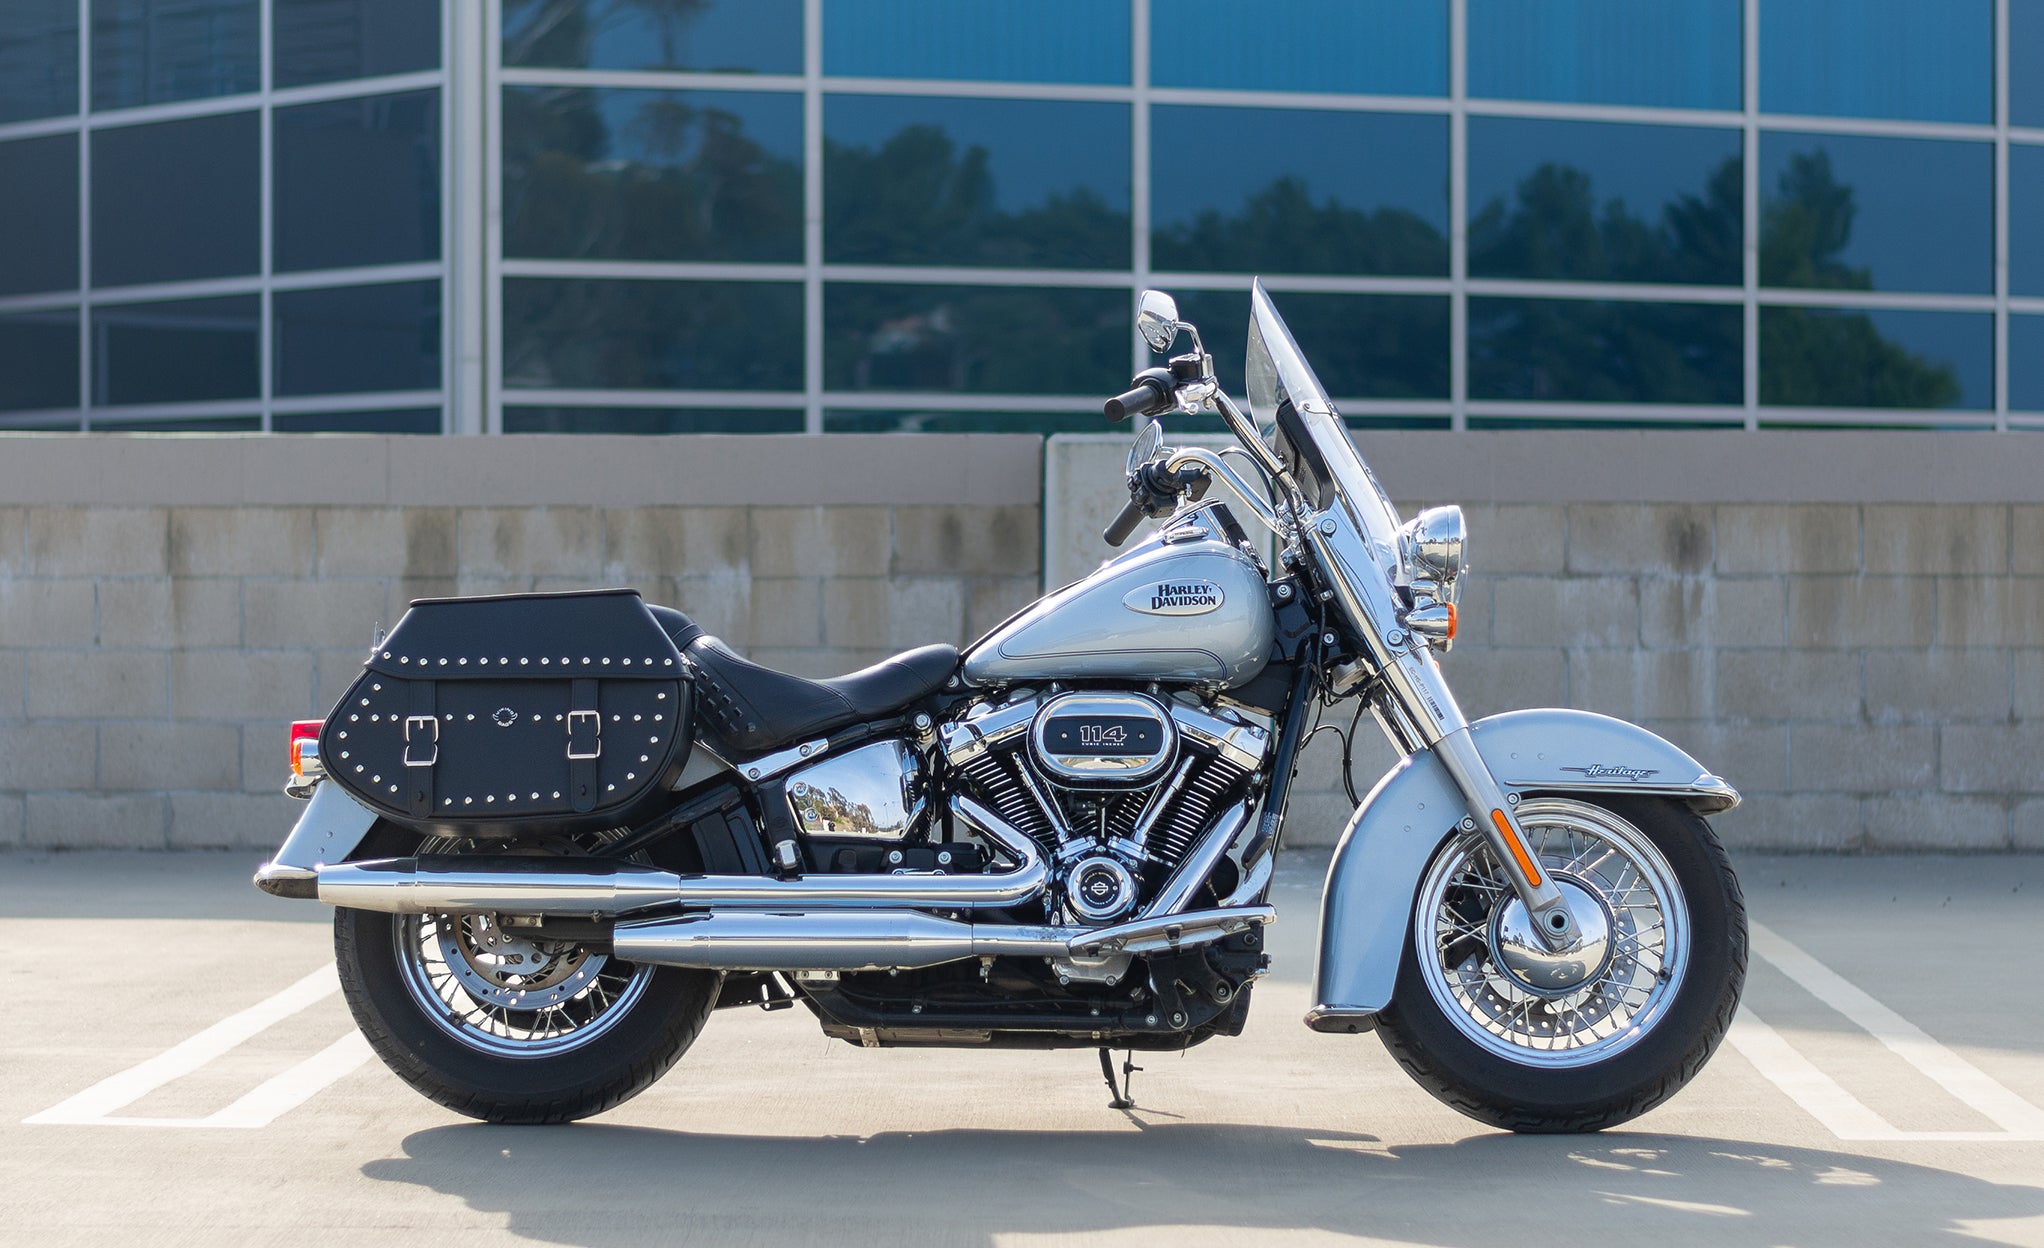 Viking Legacy Extra Large Studded Leather Motorcycle Saddlebags For Harley Softail Heritage Flst I C Ci @expand